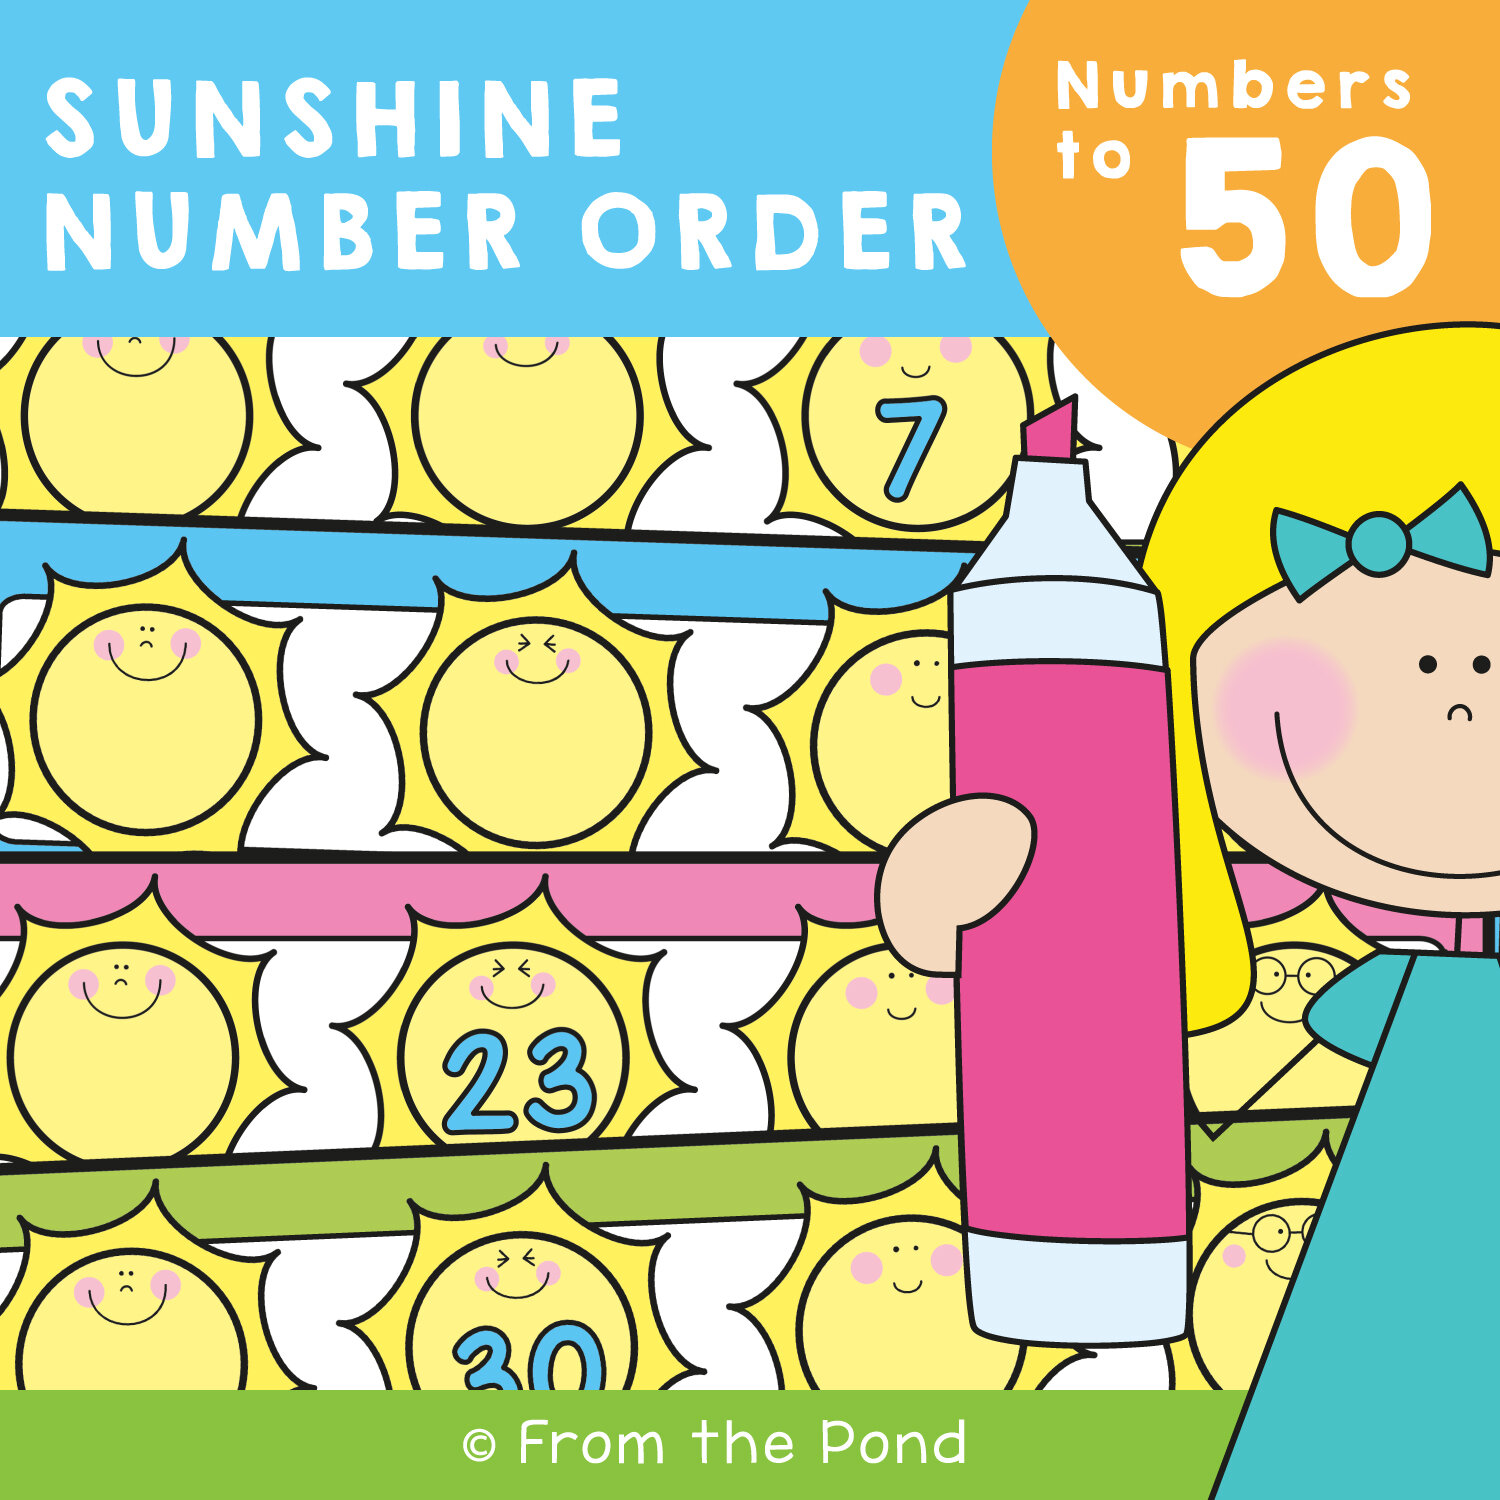 Sunshine Number Order